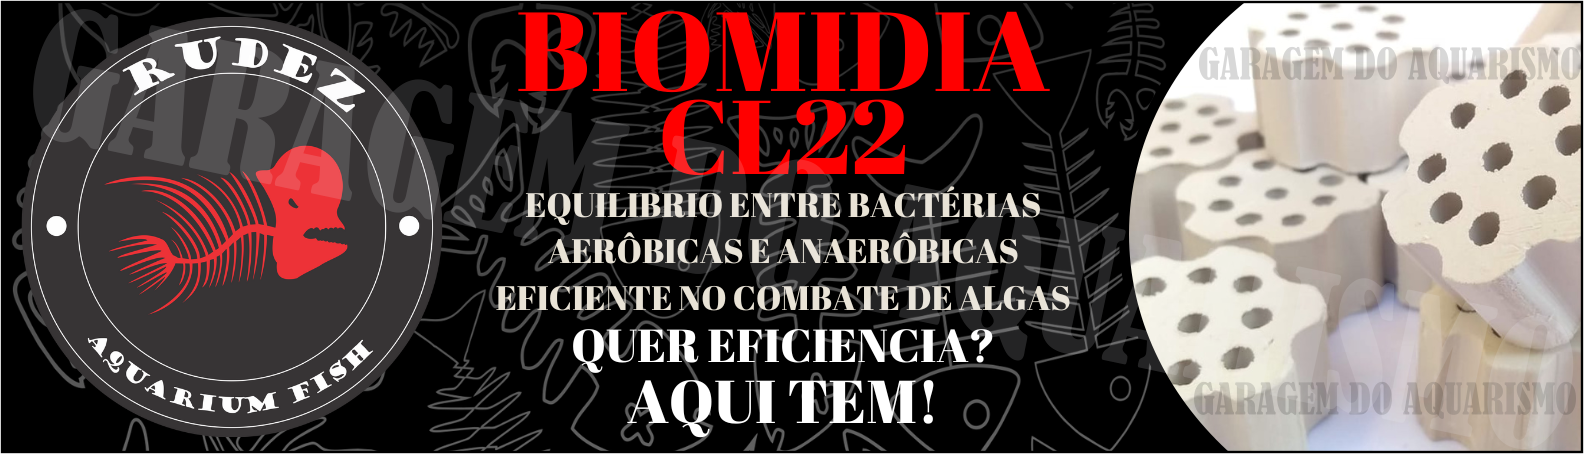 CL22 MIDIA